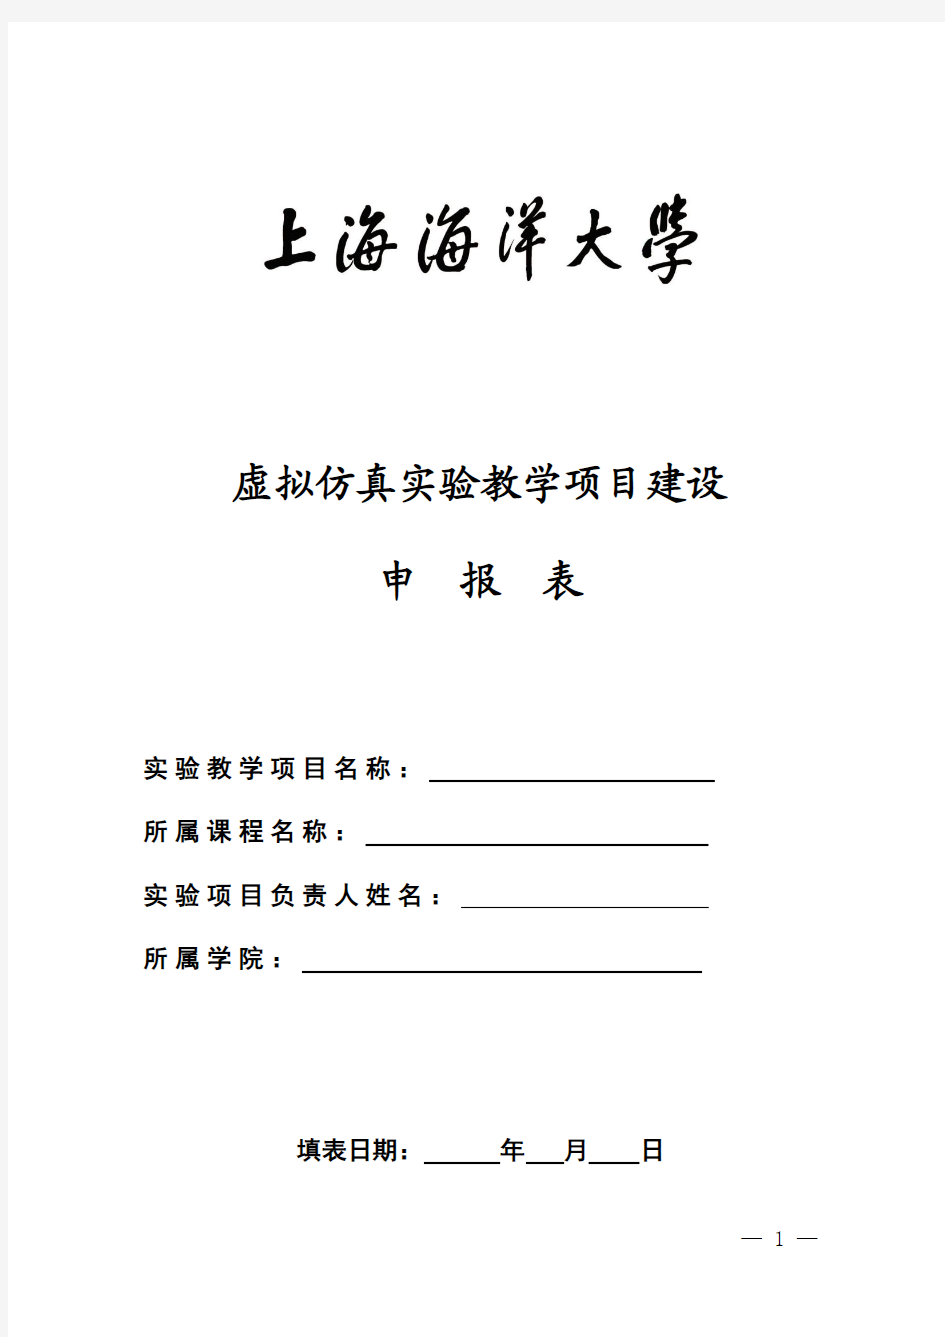 上海海洋大学虚拟仿真教学项目申报表-教务在线